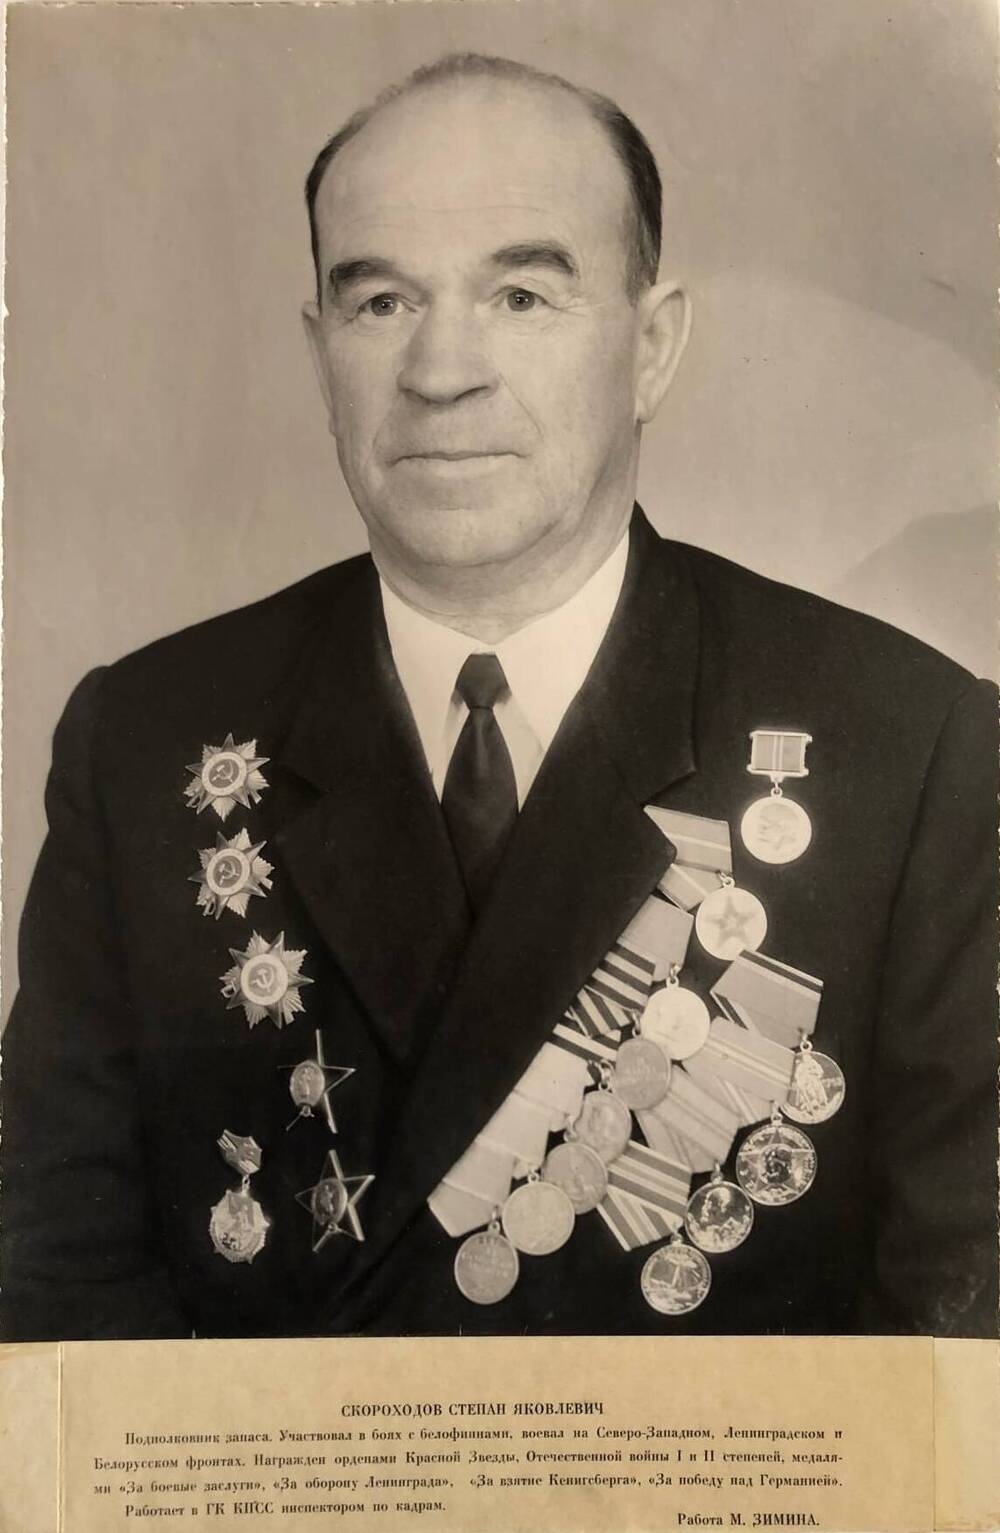 Фотография Скороходова Степана Яковлевича, участника Великой Отечественной войны 1941-1945 гг.